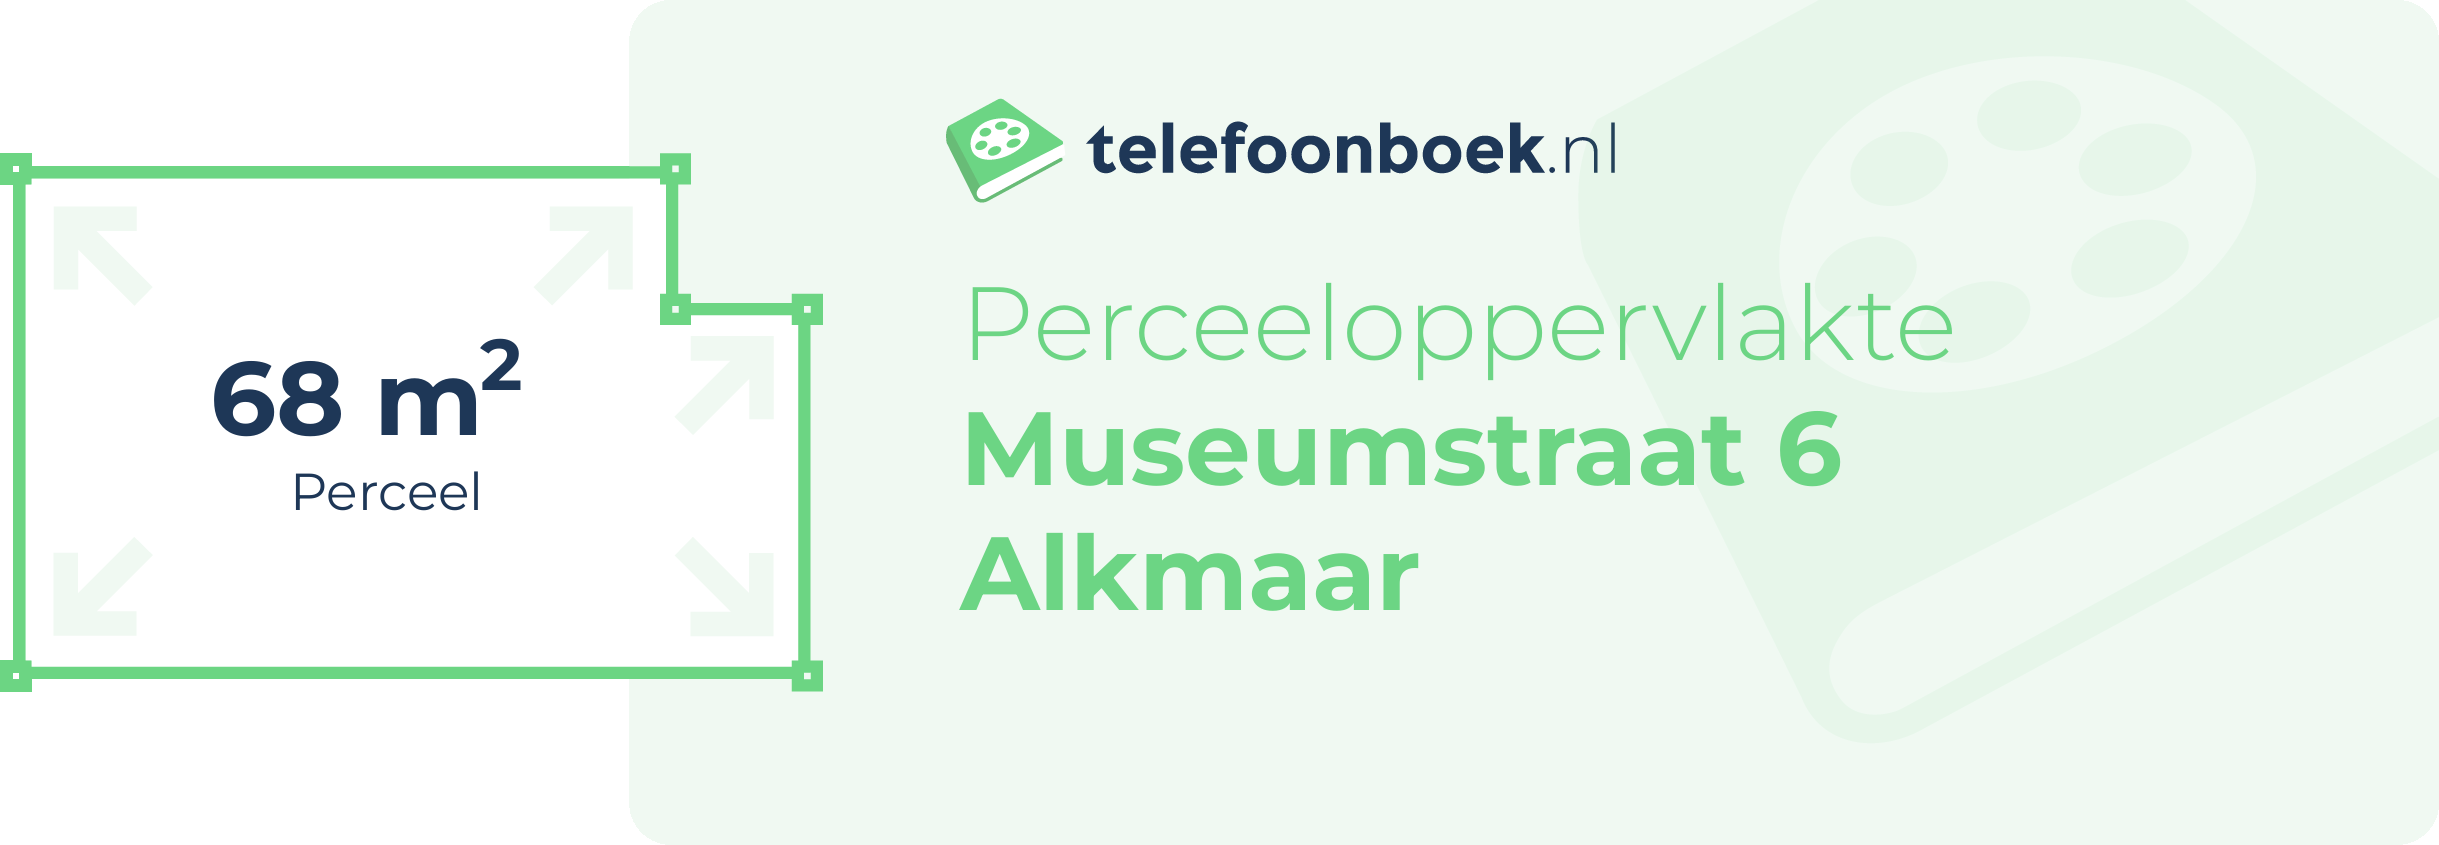 Perceeloppervlakte Museumstraat 6 Alkmaar